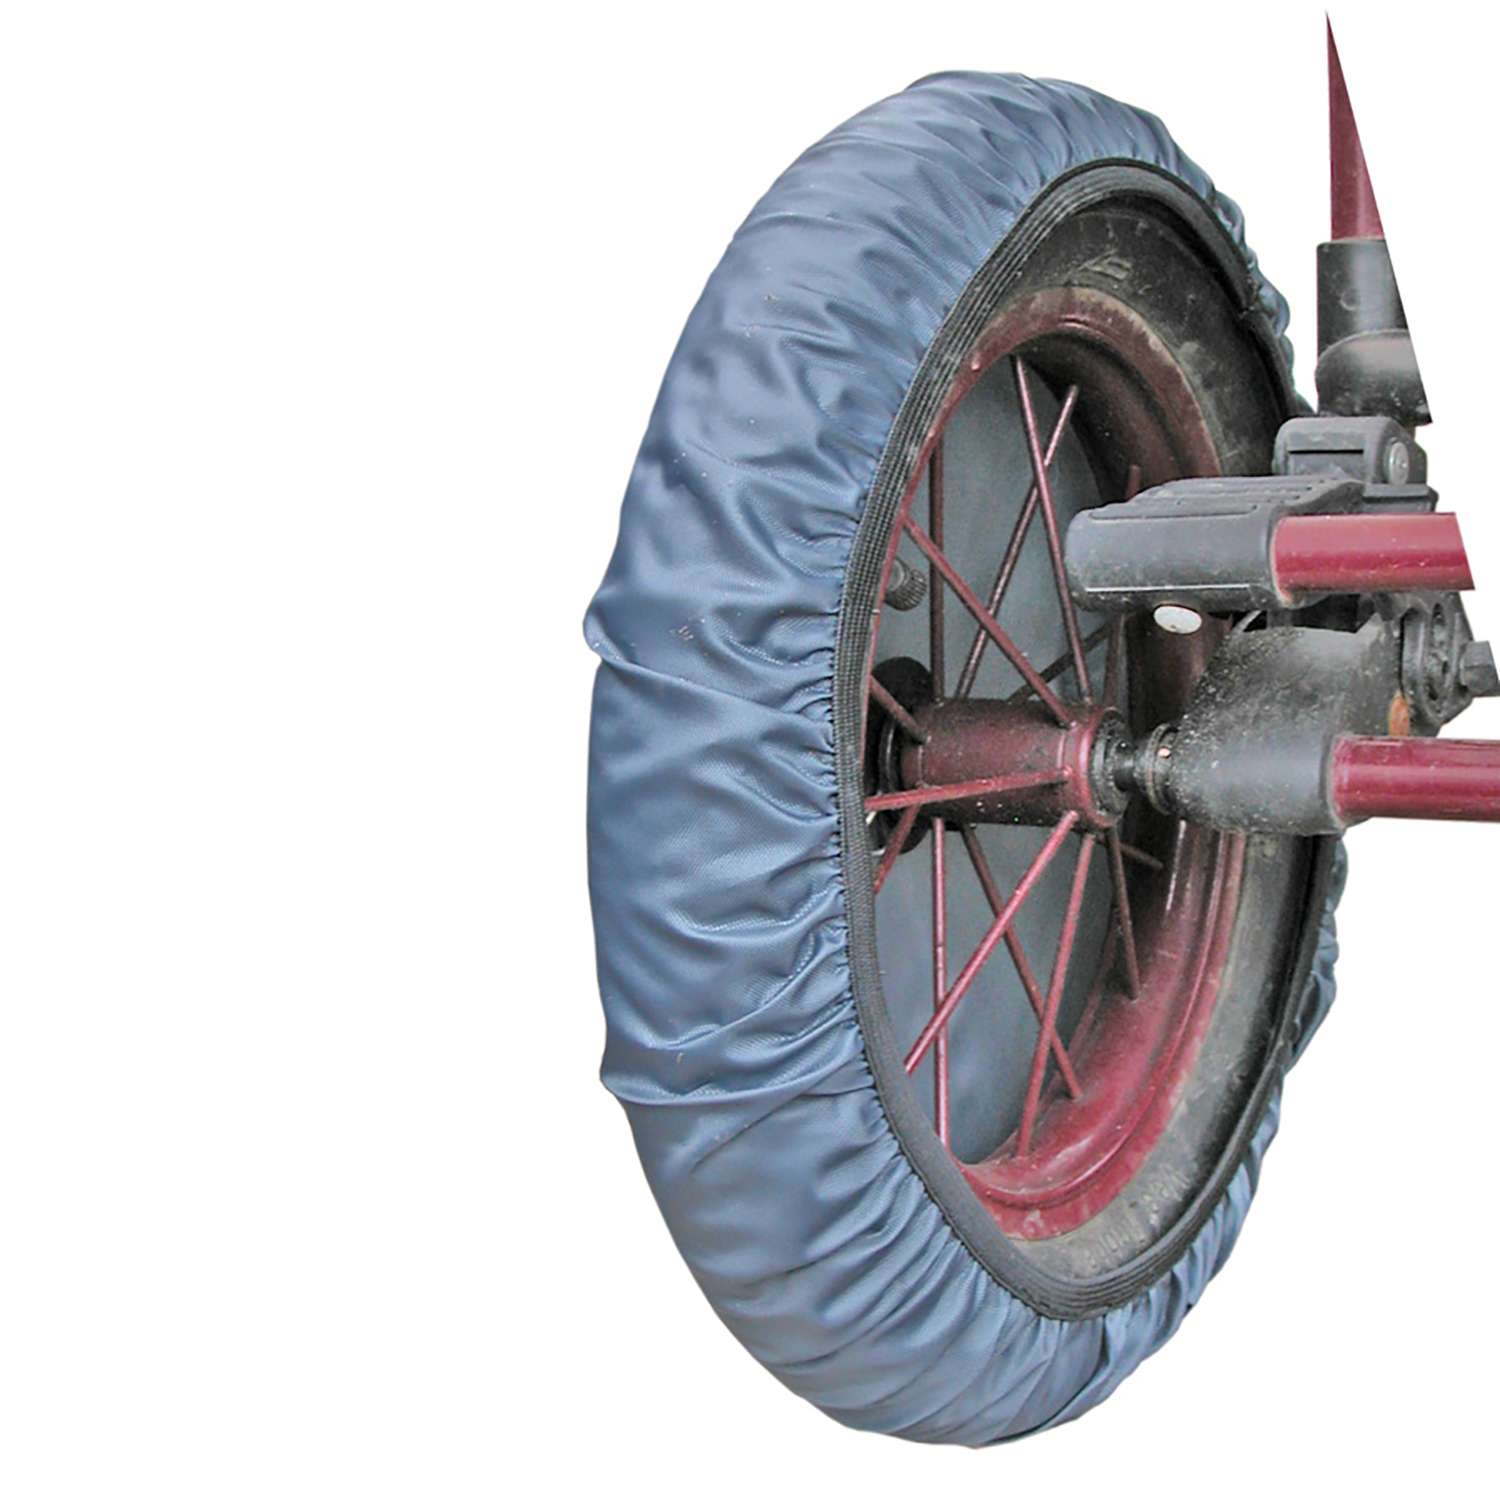 Чехлы на колеса Чудо-чадо для коляски 4 шт мокрый асфальт / d = 28-34 см CHK01-001 - фото 7